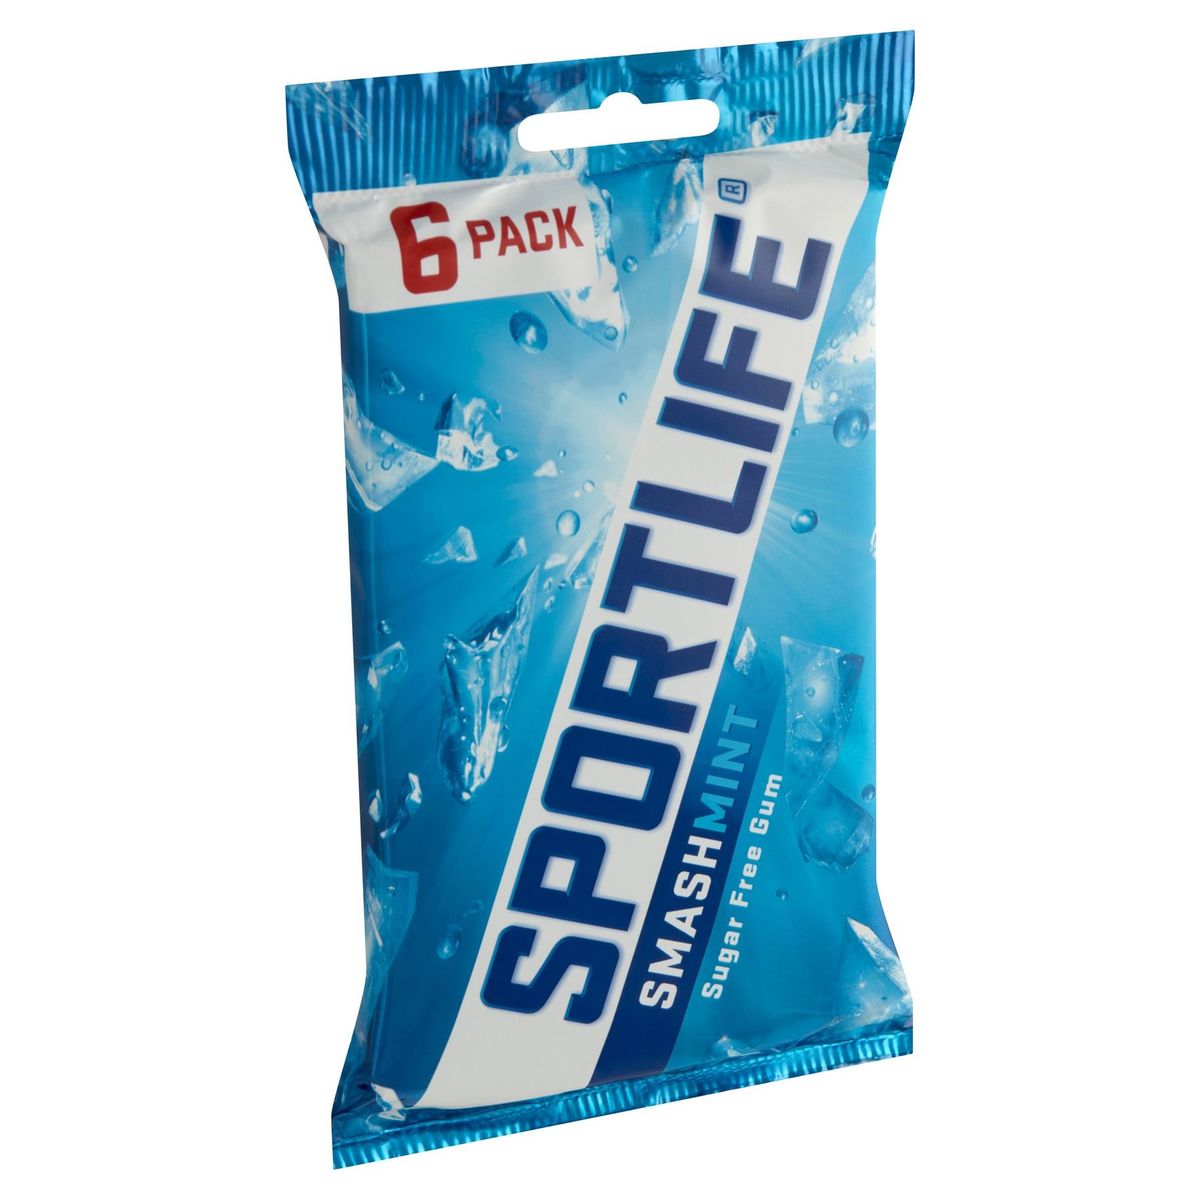 Sportlife Smashmint Sugar Free Gum 6 x 18 g